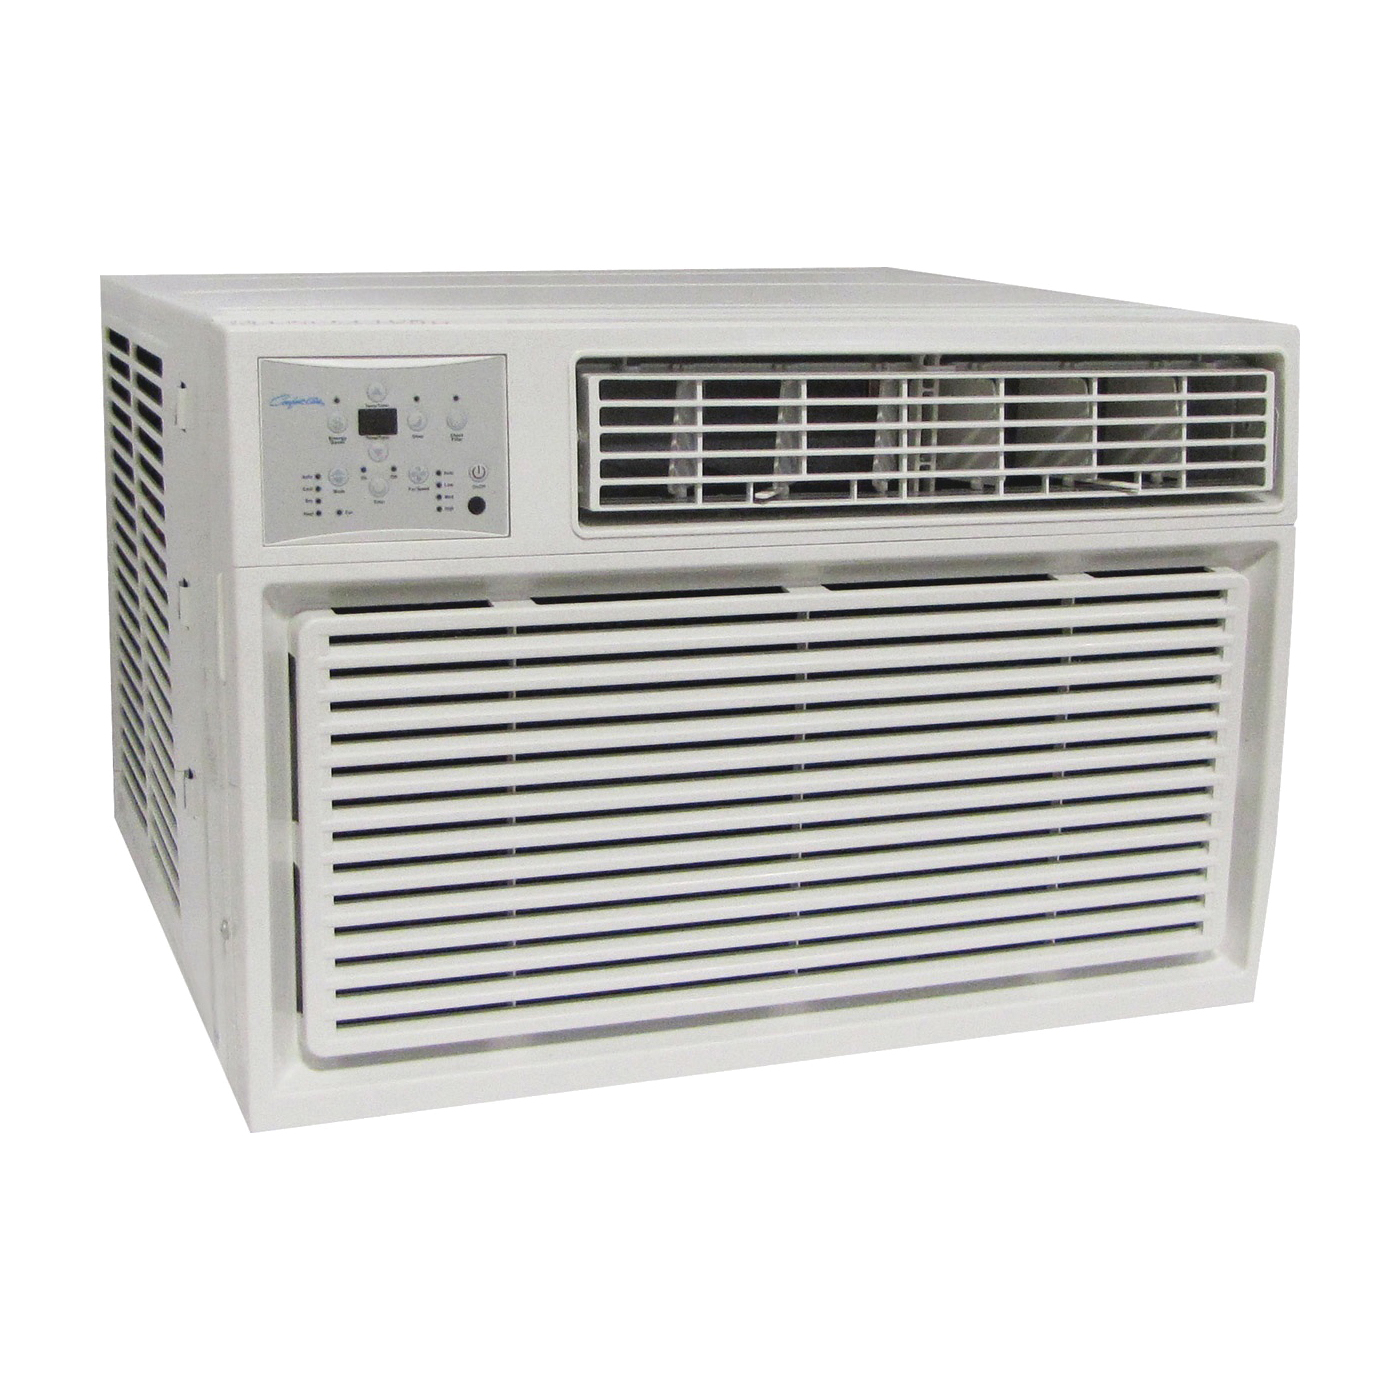 REG-123M Room Air Conditioner, 208/230 V, 60 Hz, 11,600, 12,000 Btu/hr Cooling, 10.9 EER, 61/58/55 dB